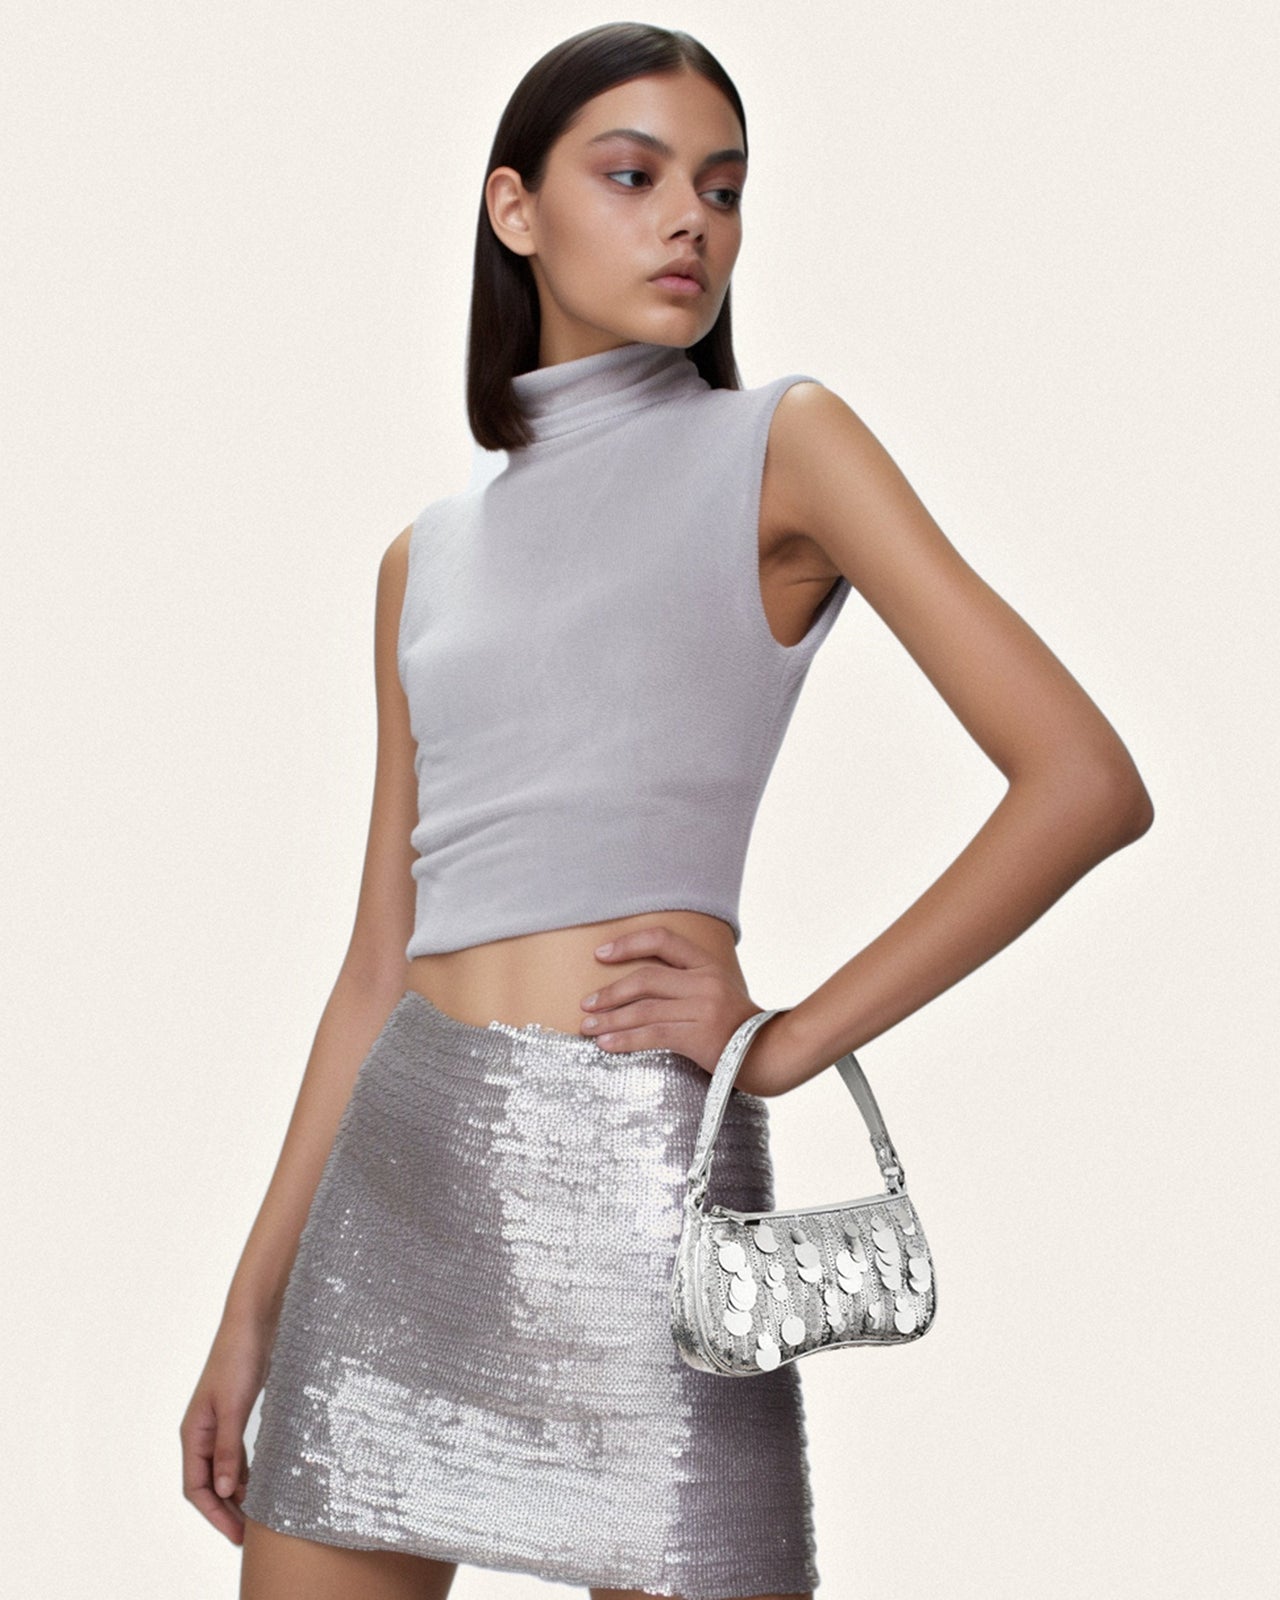 La borsa a tracolla mini in paillettes metalliche Eva - Argento